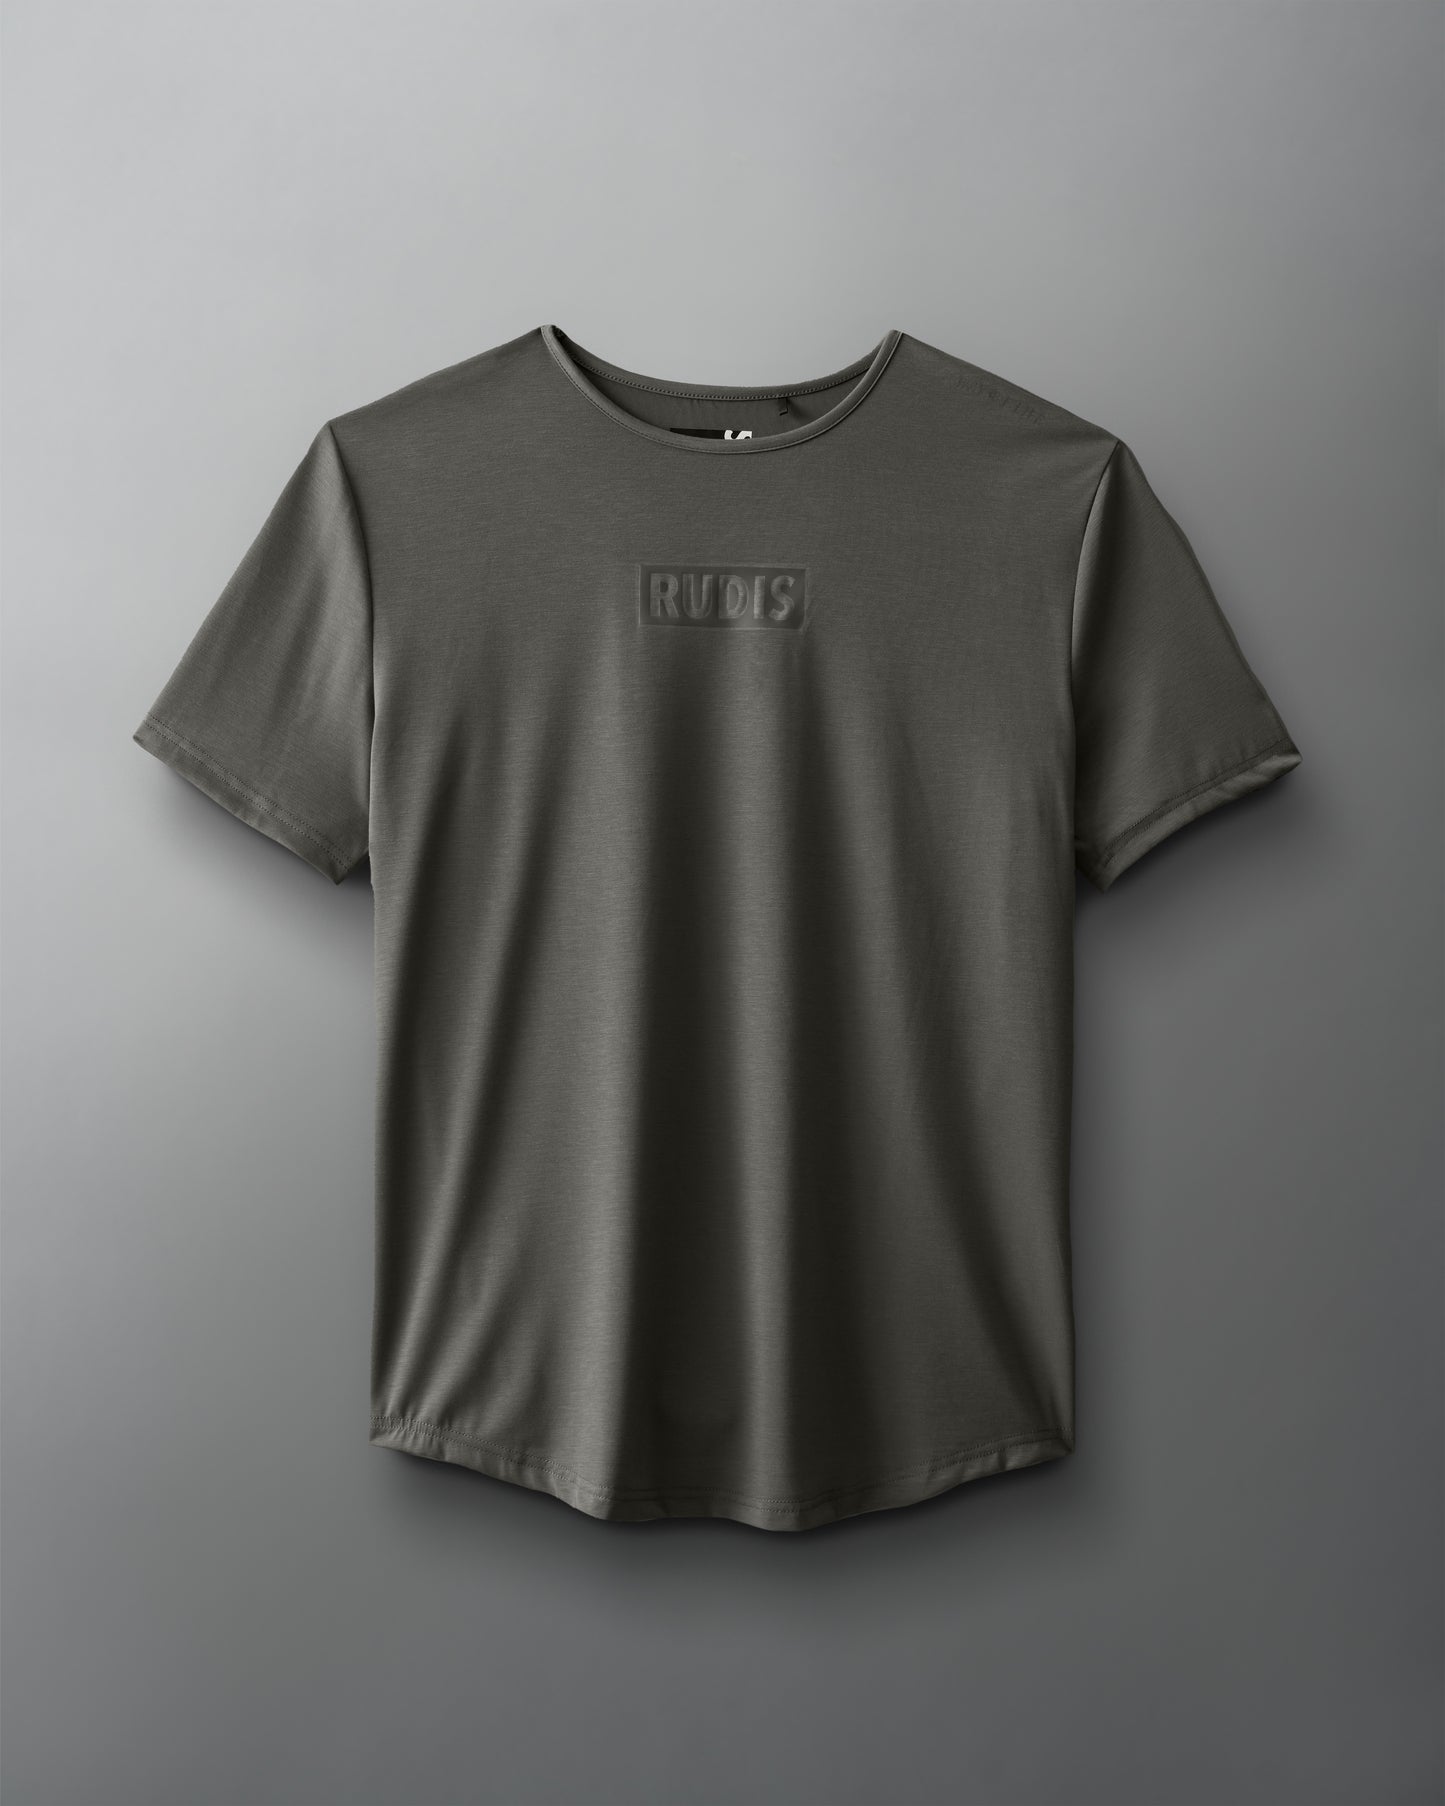 RUDIS Tonal Ultimate T-Shirt